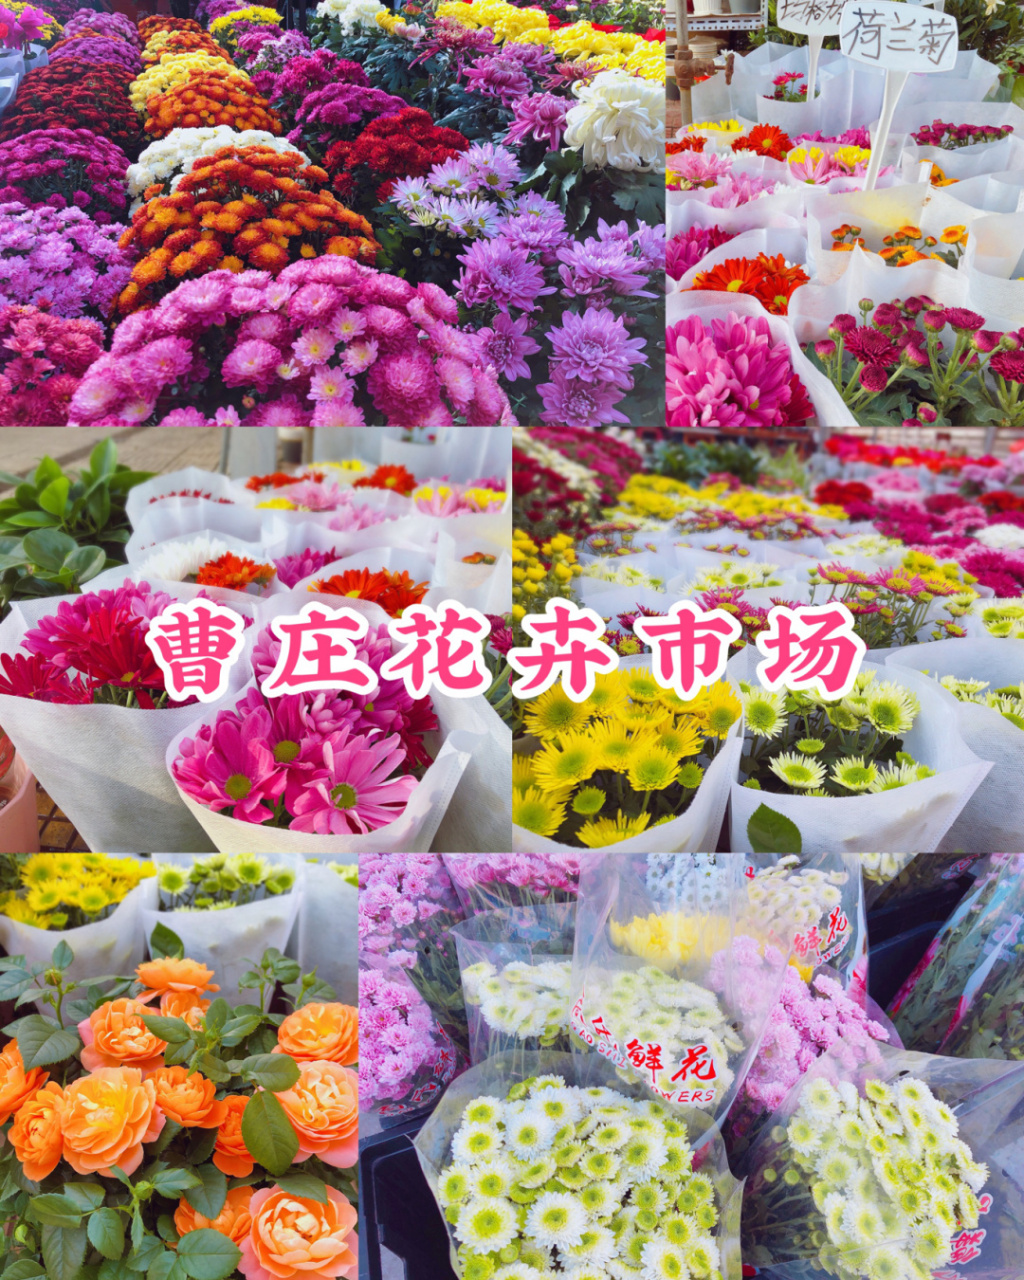 曹庄子花卉市场地址图片